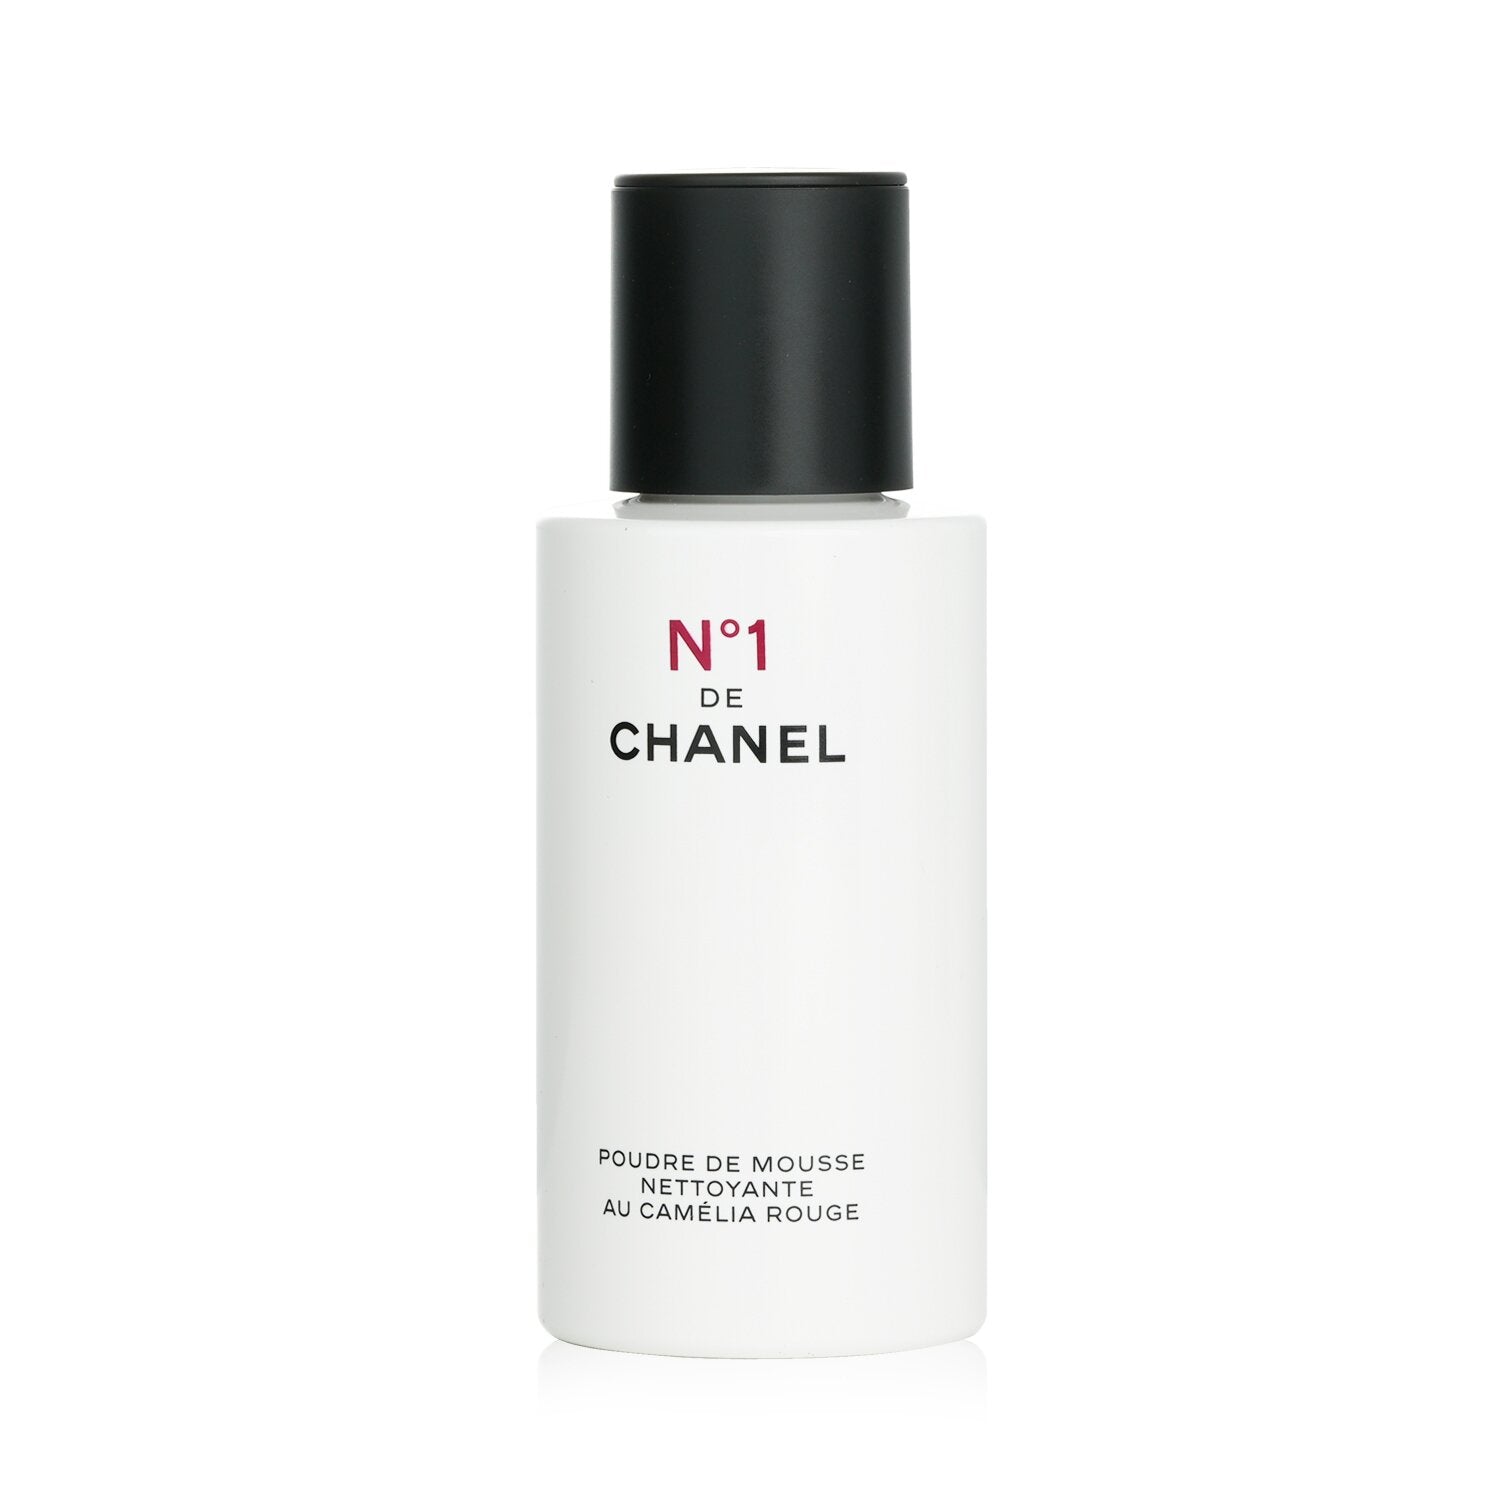  Chanel Cristalle Eau Verte Eau de Toilette Spray, 1.7 Ounce :  Beauty & Personal Care